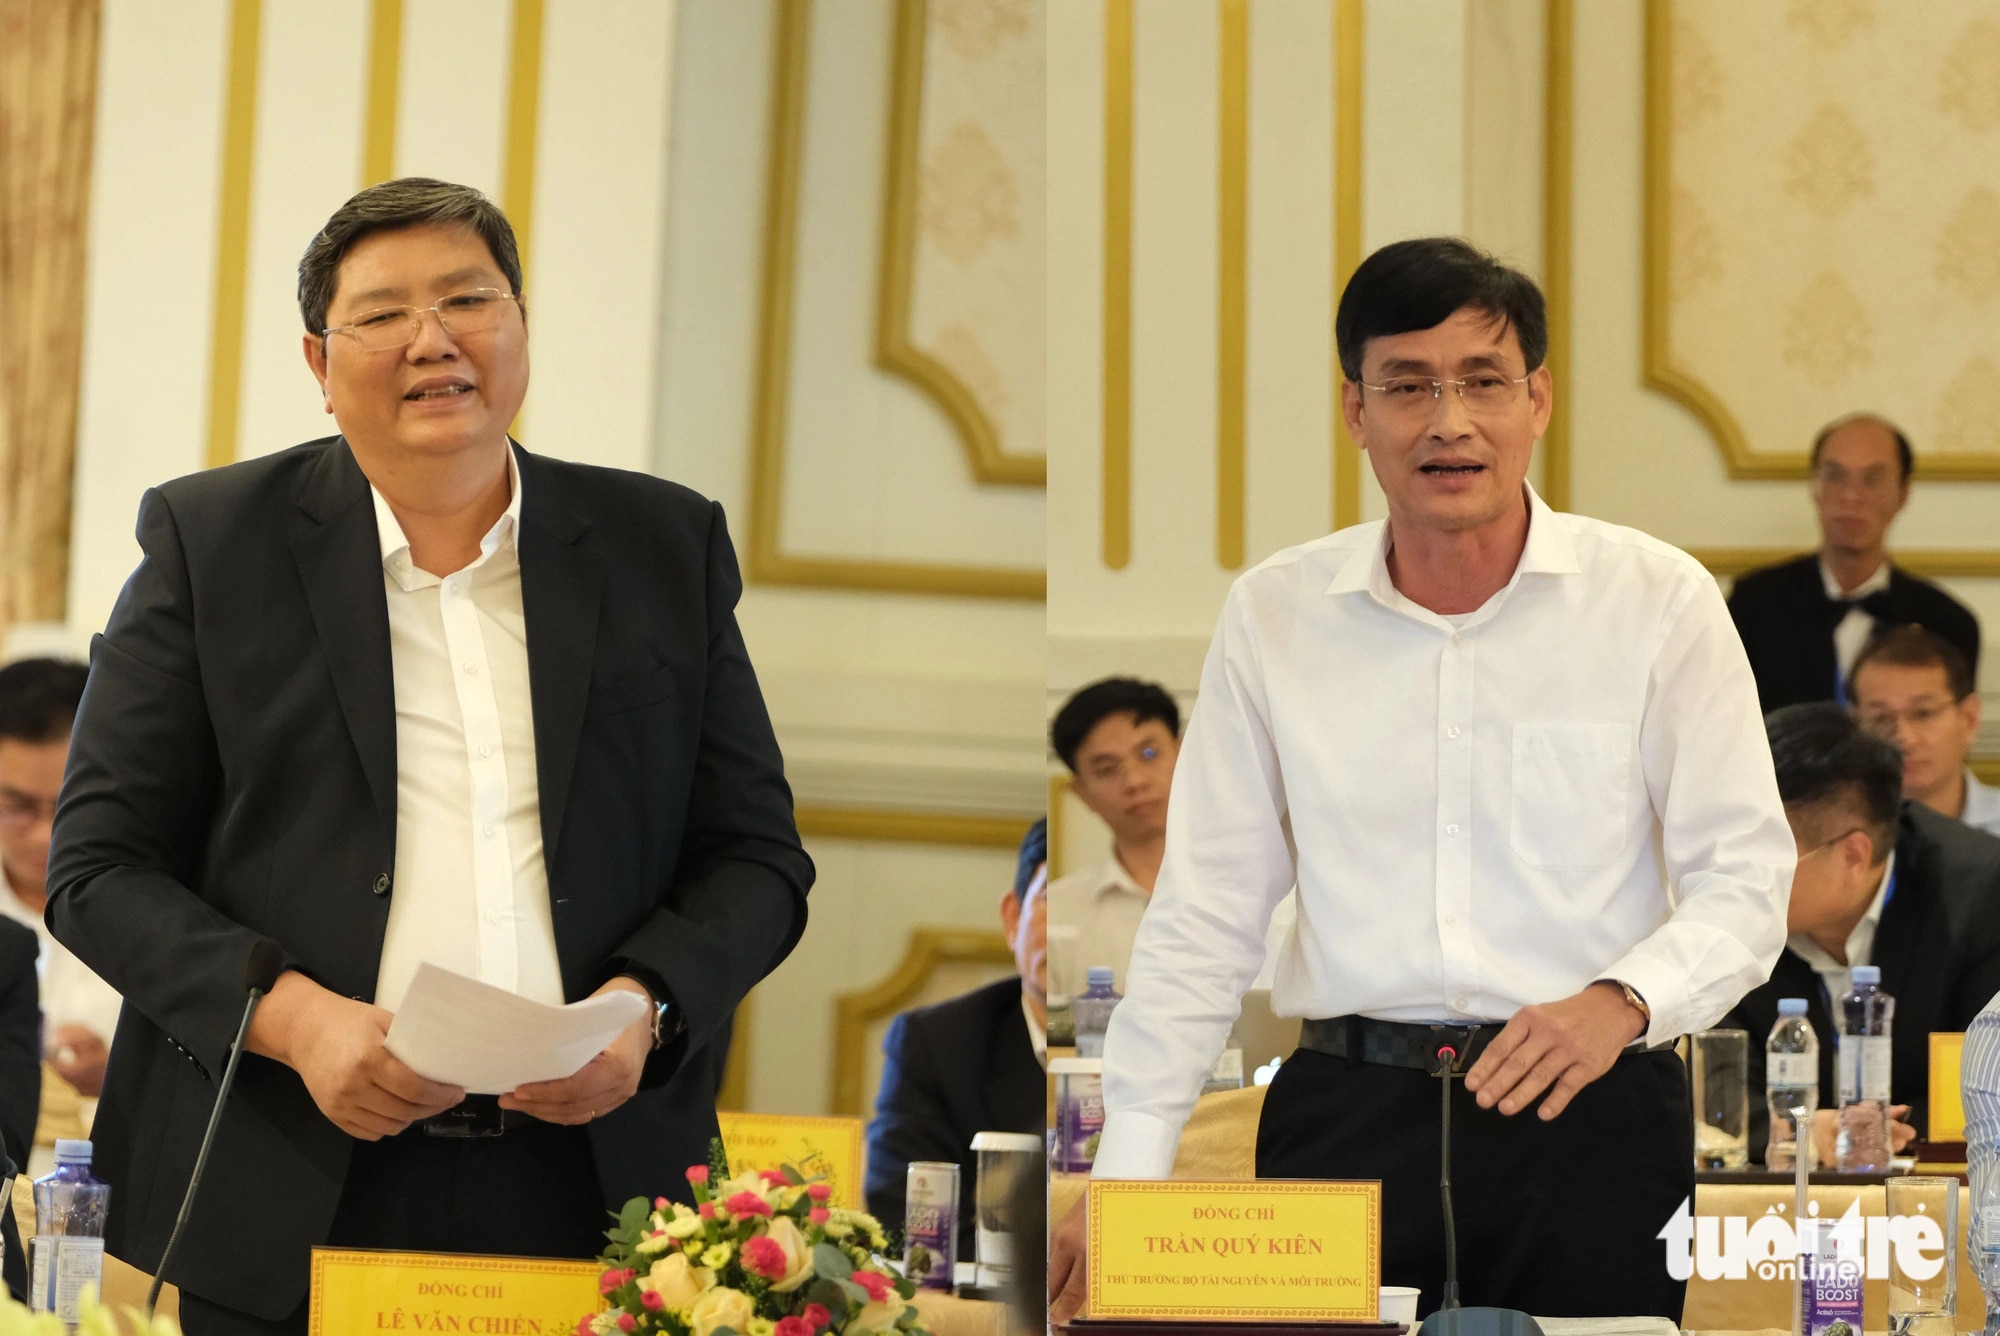 Ông Lê Văn Chiến (trái), phó chủ tịch UBND tỉnh Đắk Nông, trao đổi với Thứ trưởng Bộ Tài nguyên và Môi trường Trần Quý Kiên về vướng mắc liên quan đến Quyết định 866 - Ảnh: M.V.